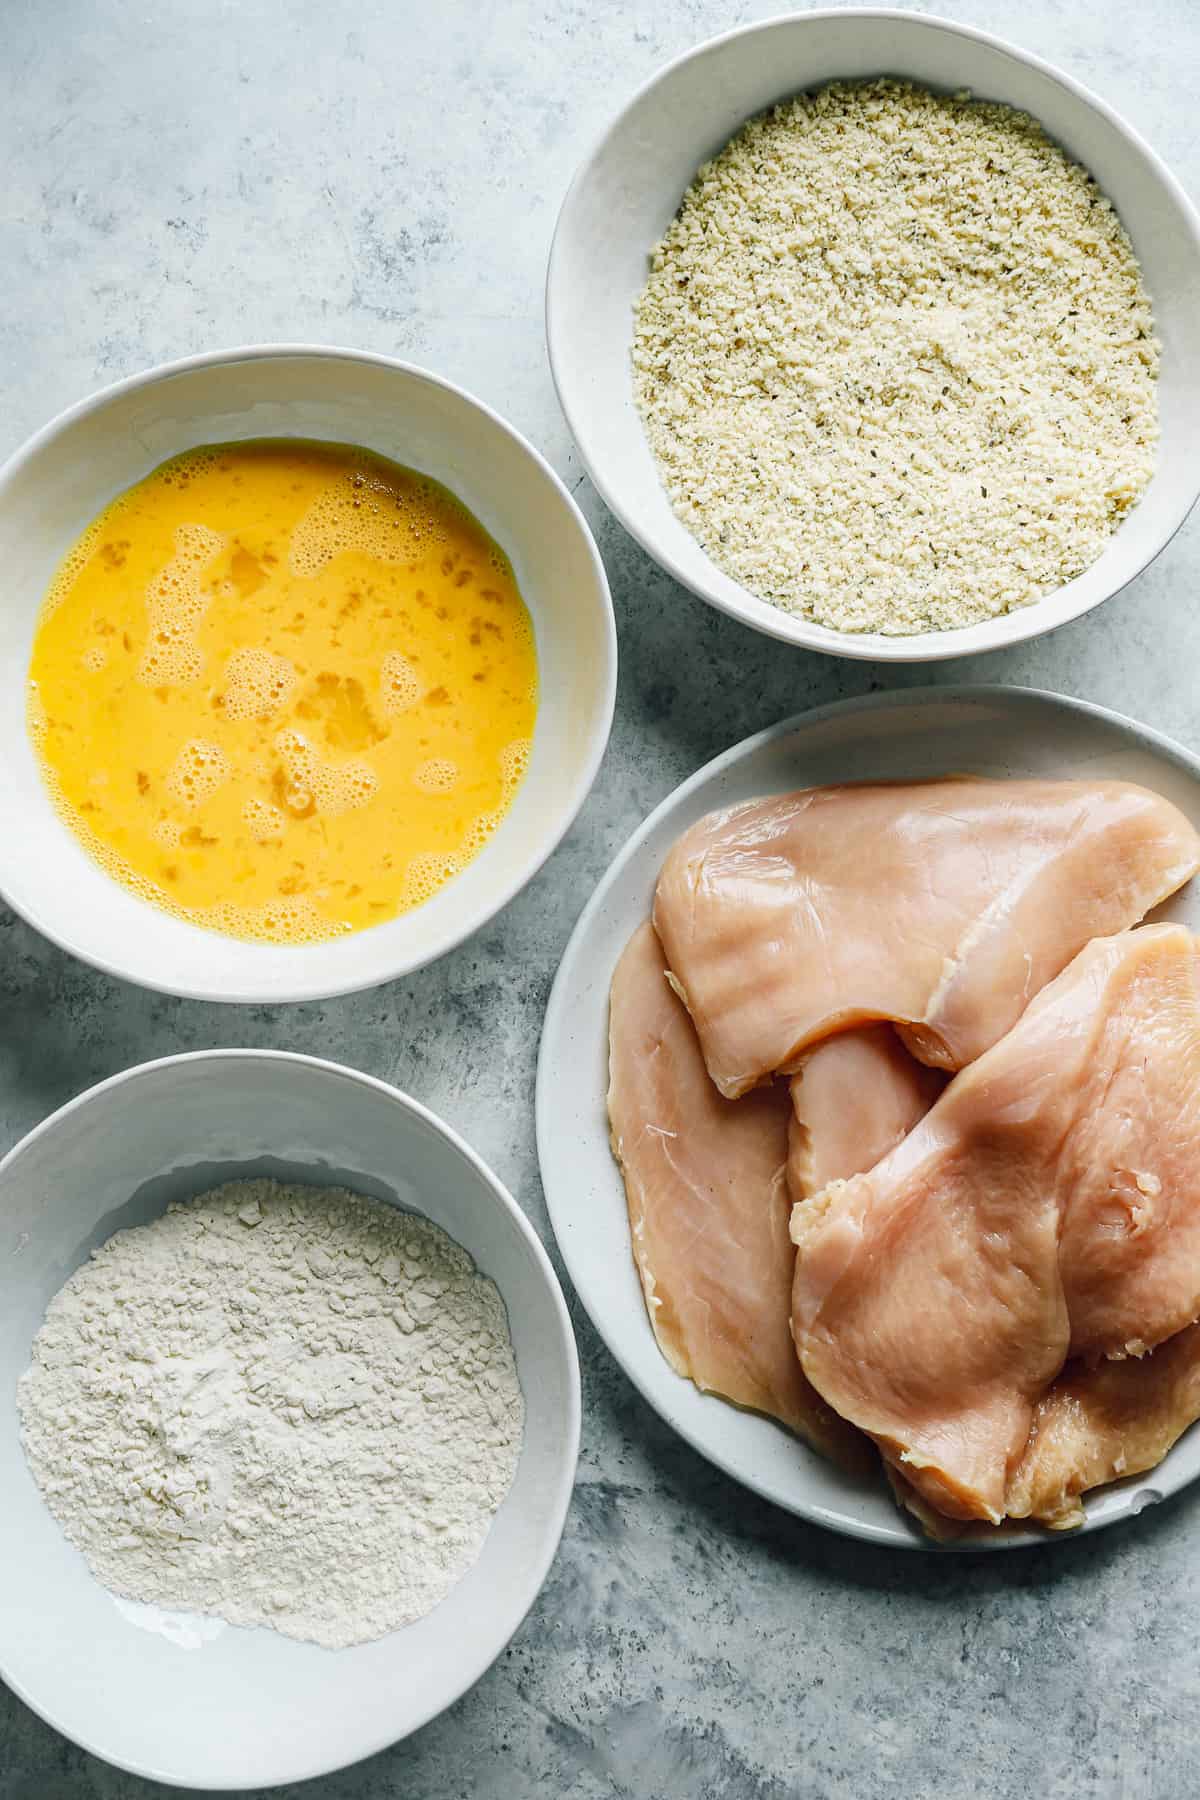 chicken dredging ingredients in white dishes (egg, flour, breadcrumbs, raw chicken)